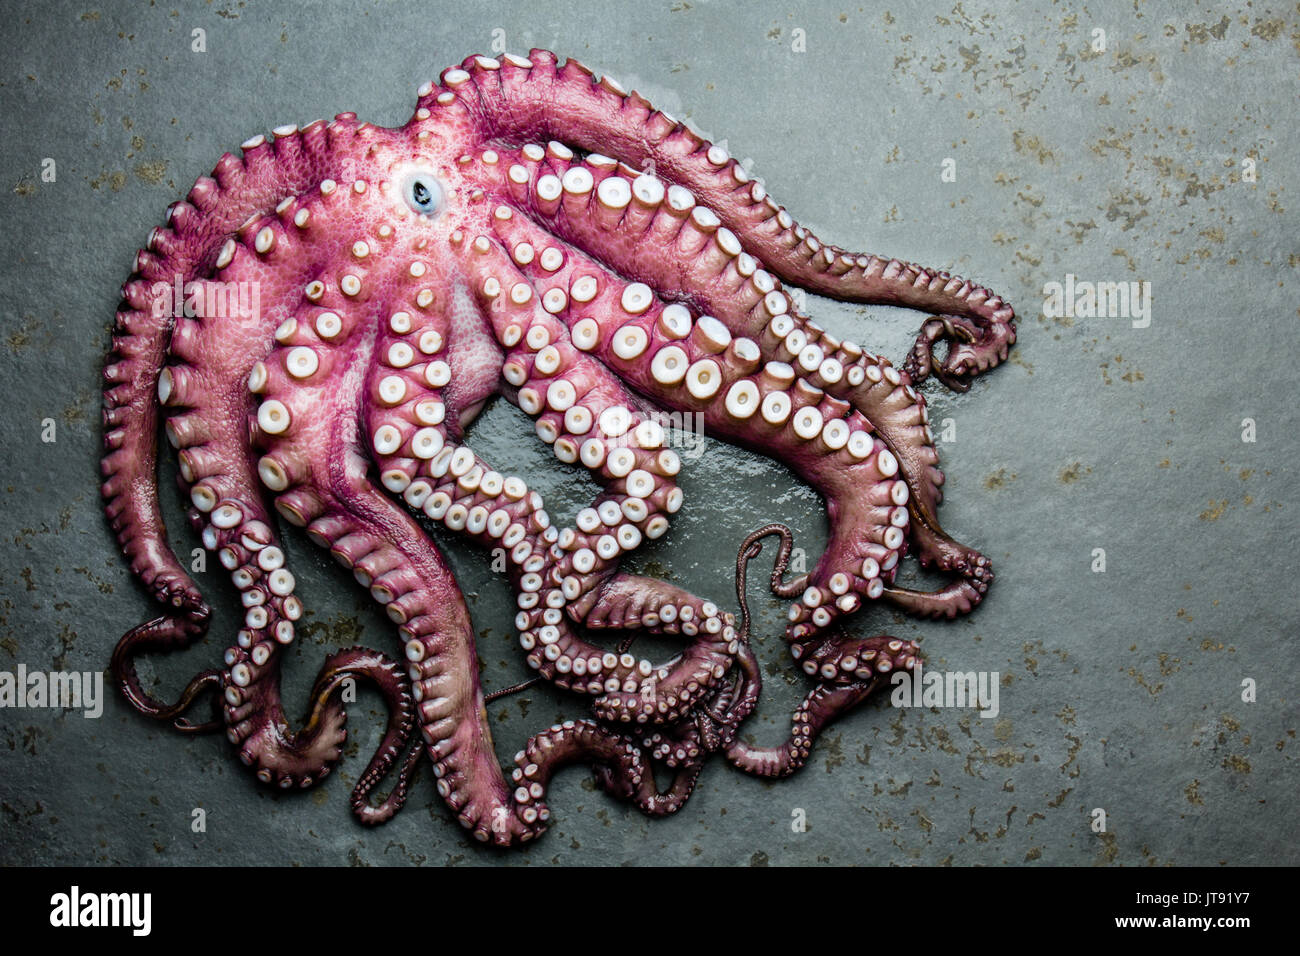 Meeresfrüchte Octopus. Ganz frischen, rohen Tintenfisch auf grauem